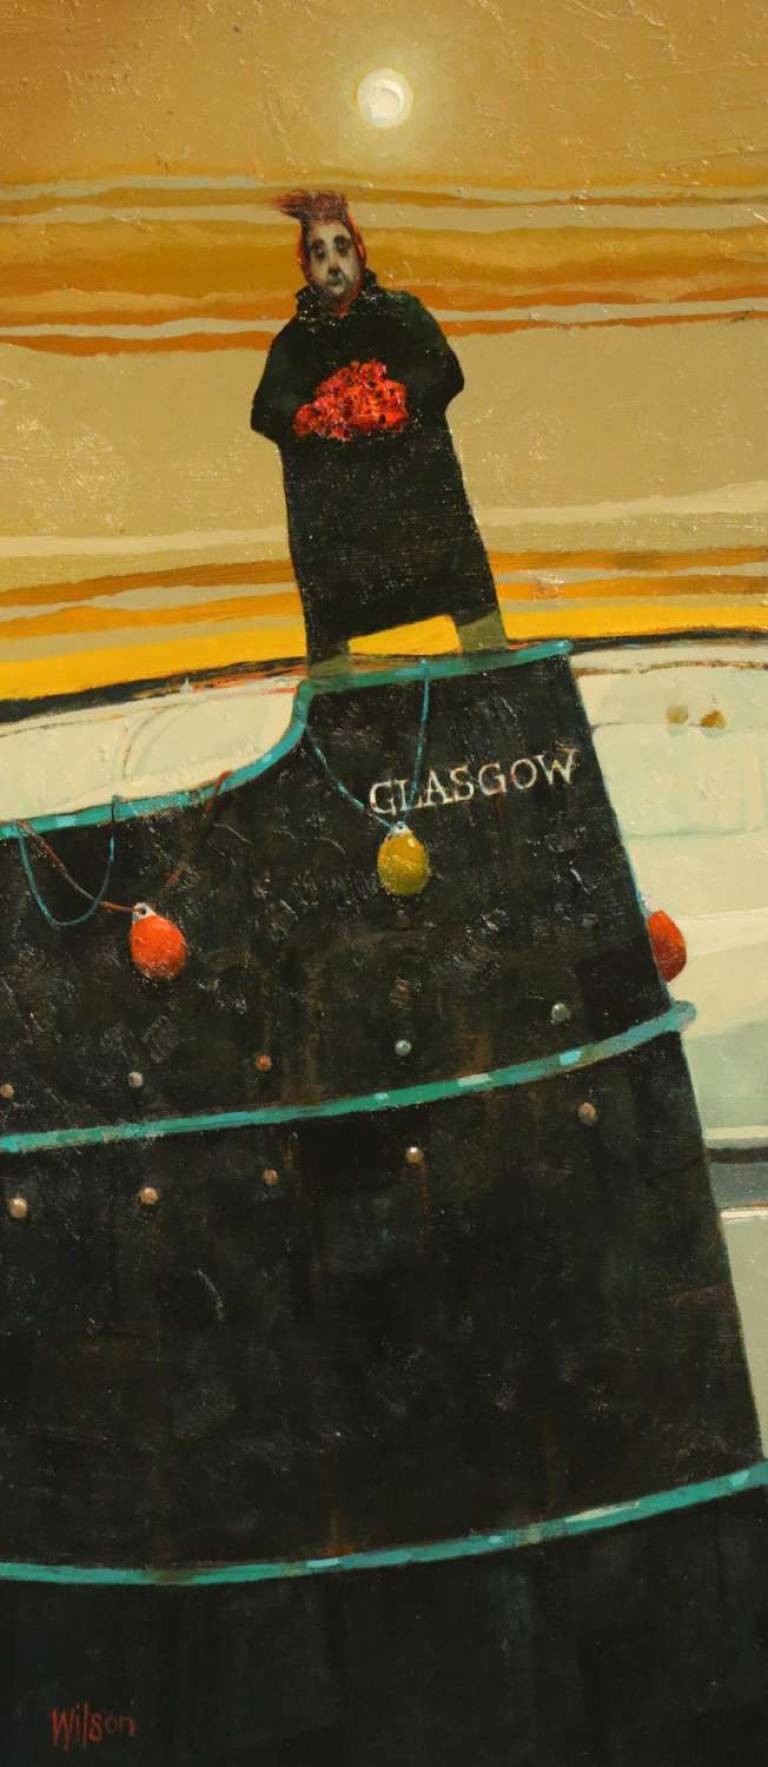 The Glasgow Nature - Gordon Wilson